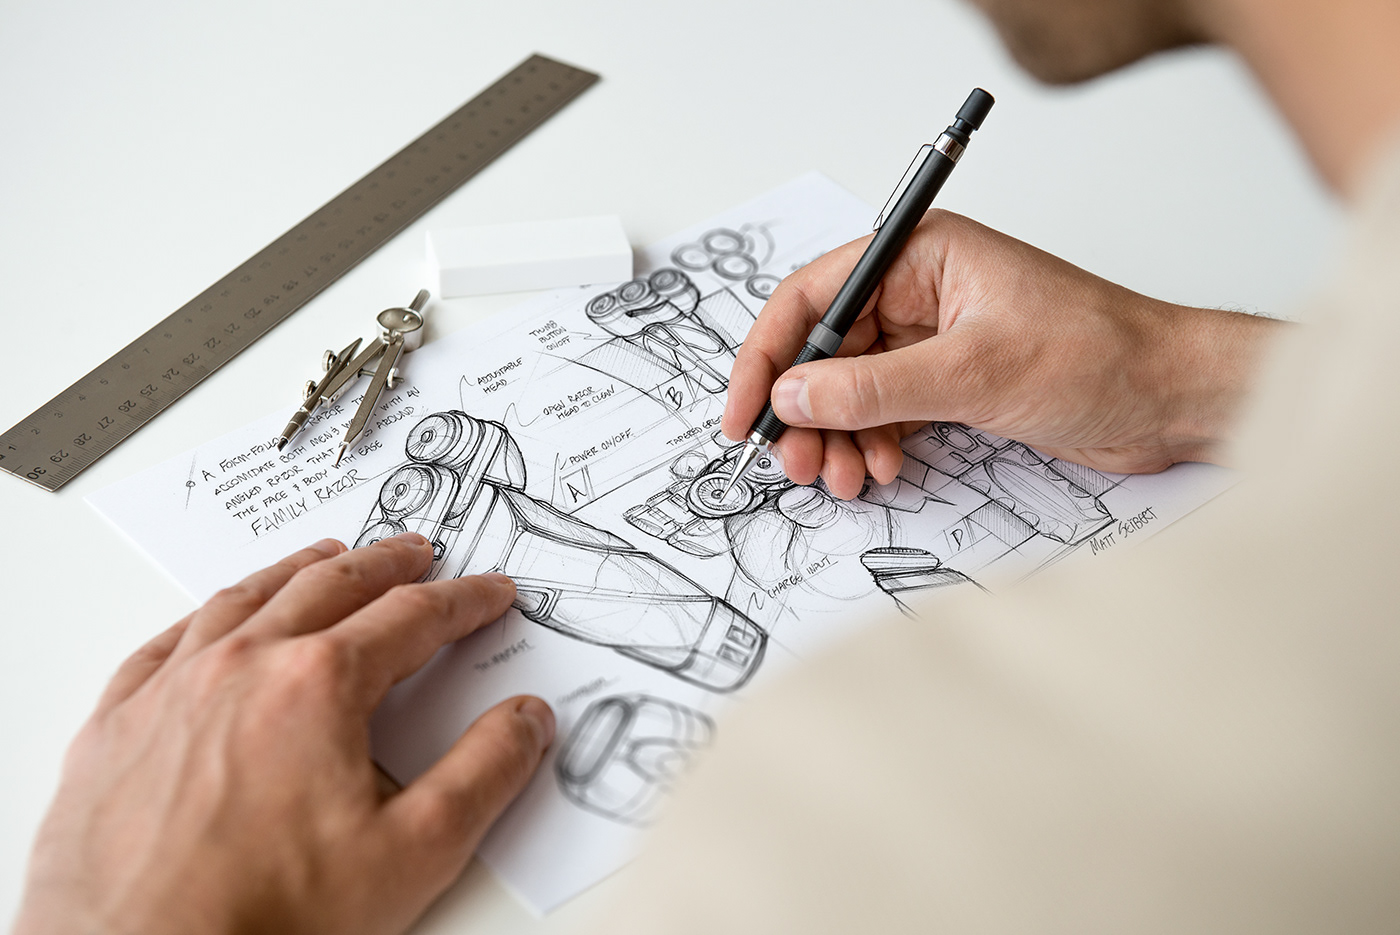 action brand eraser logo mock up mock-up paper pencil photo realistic professional Render sketch sketchbook